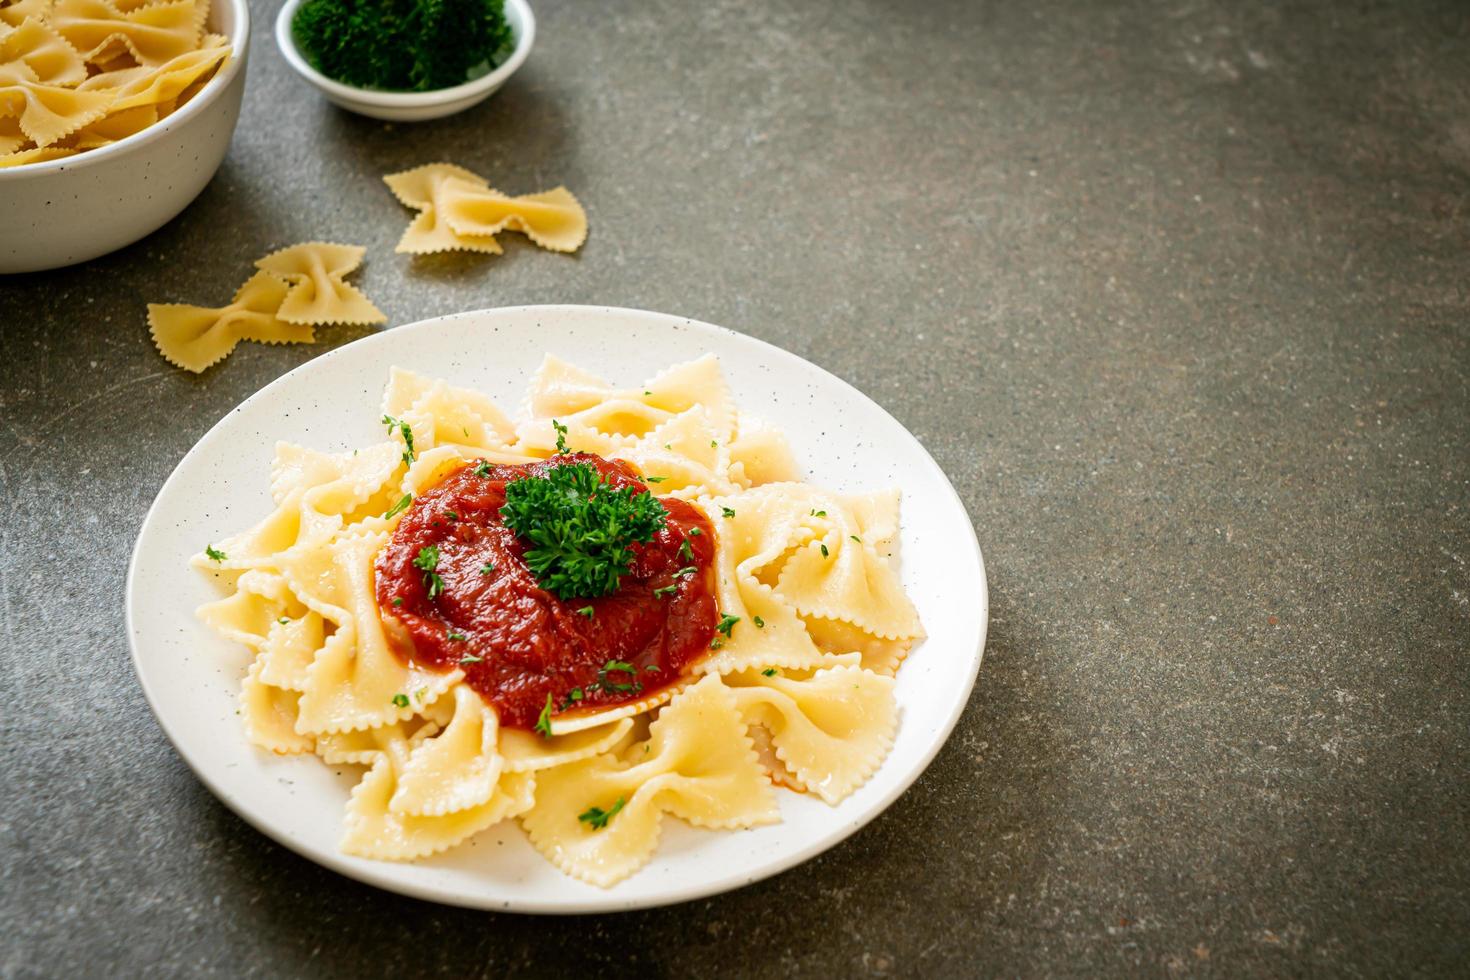 Pasta farfalle en salsa de tomate con perejil - estilo de comida italiana foto